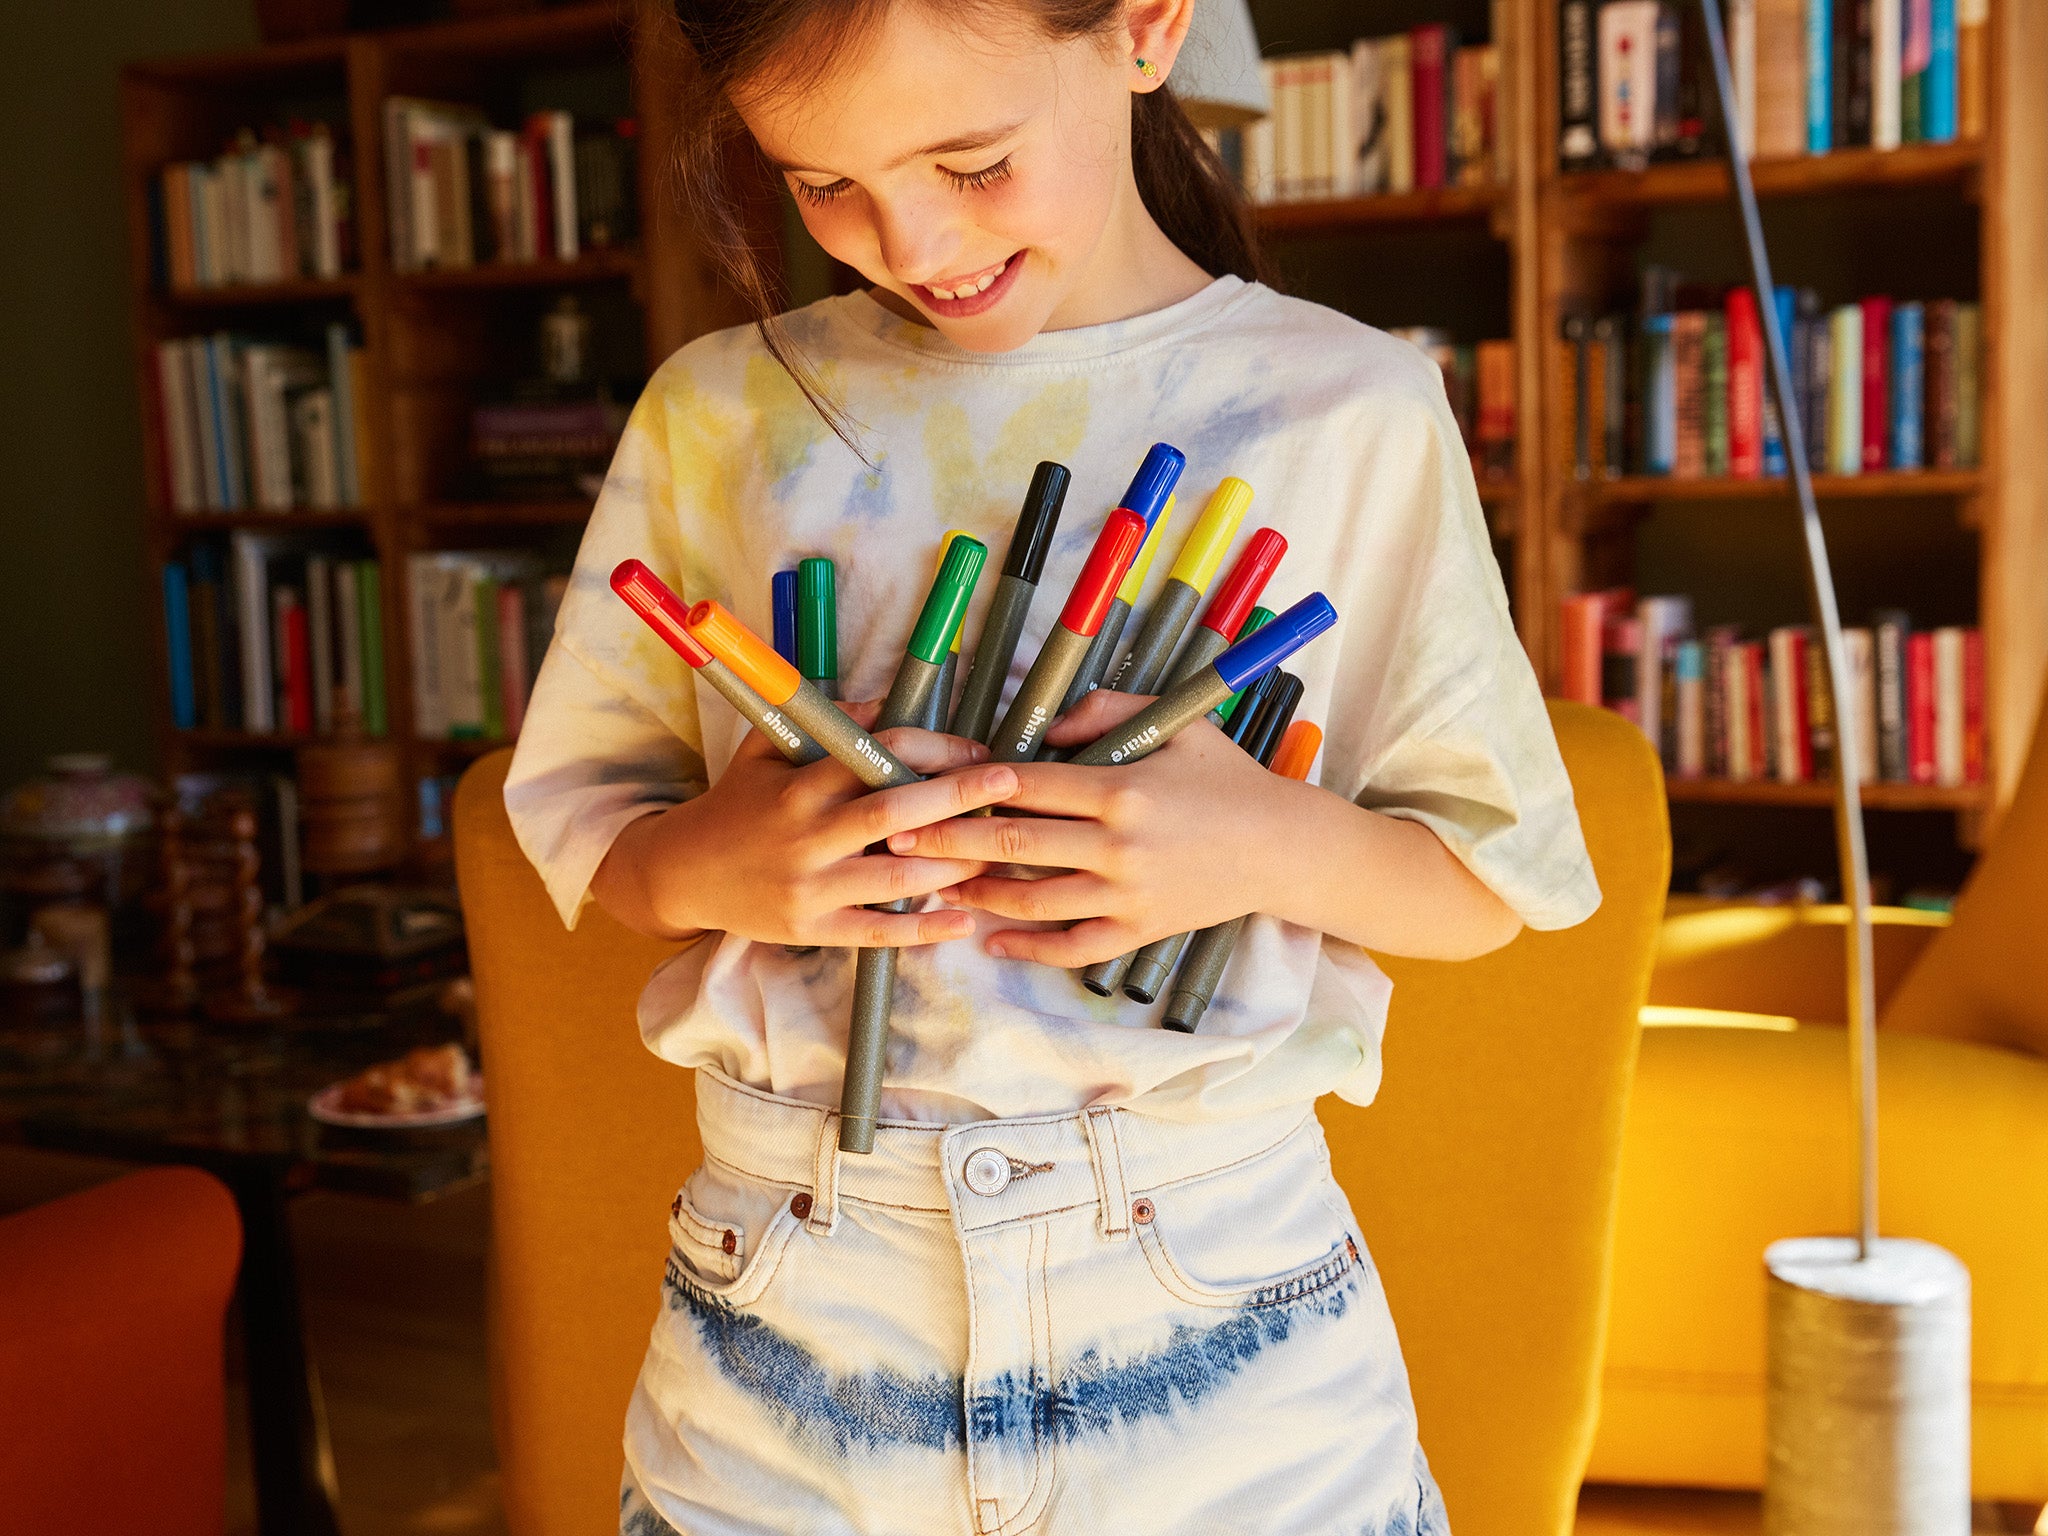 Ein junges Mädchen mit strahlendem Lächeln hält eine bunte Sammlung von Markern an die Brust und steht in einem gemütlichen Raum voller Bücher.